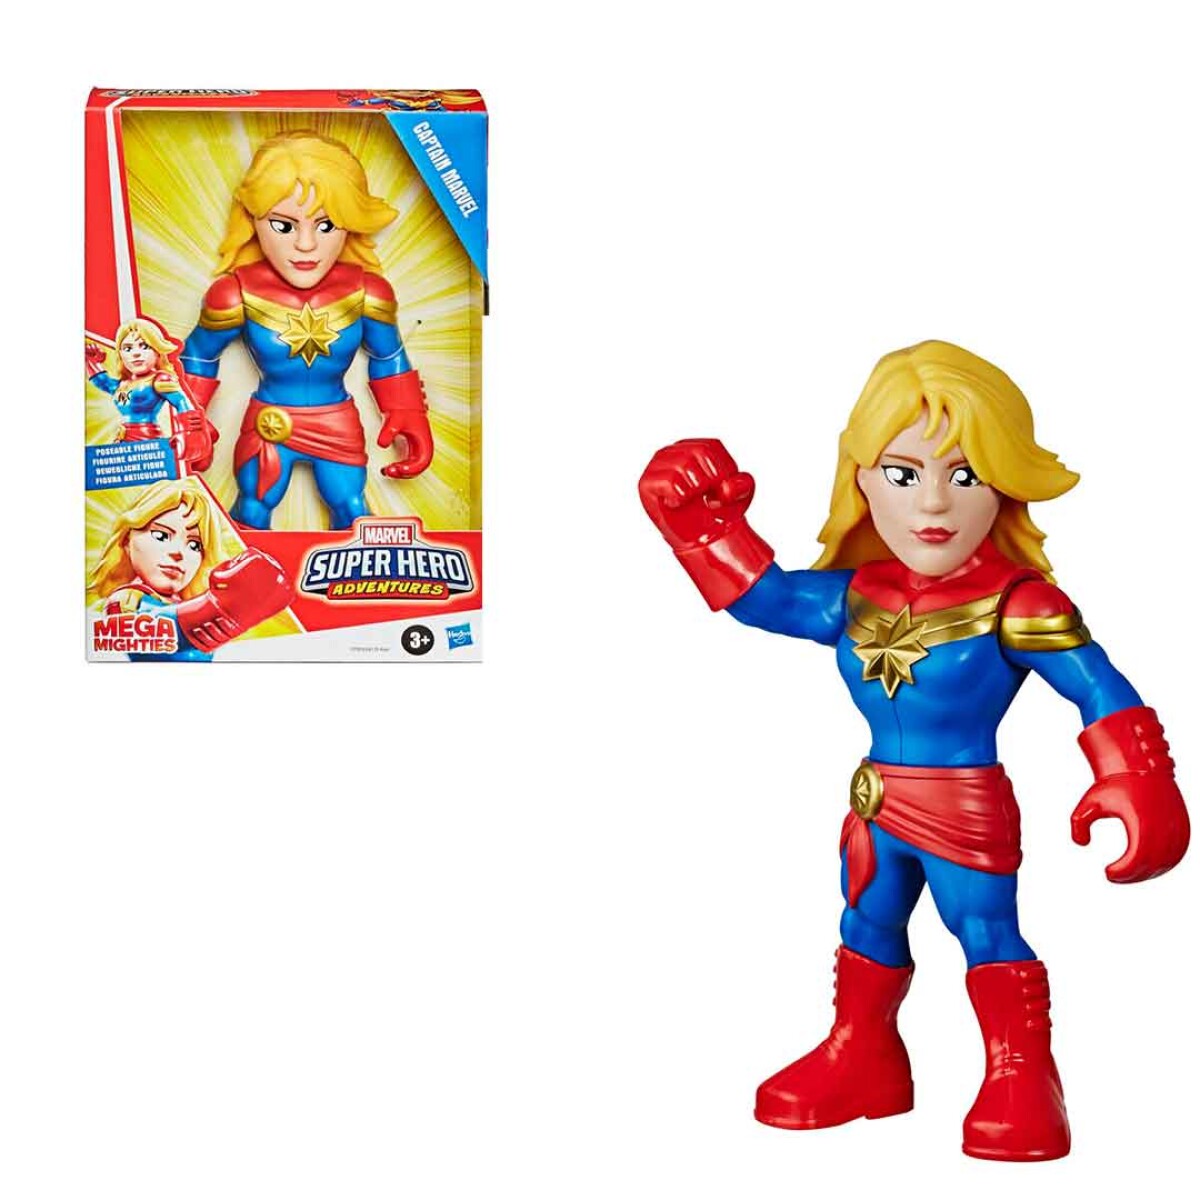 Figura Articulada Capitana marvel Super Hero Adventures - 001 